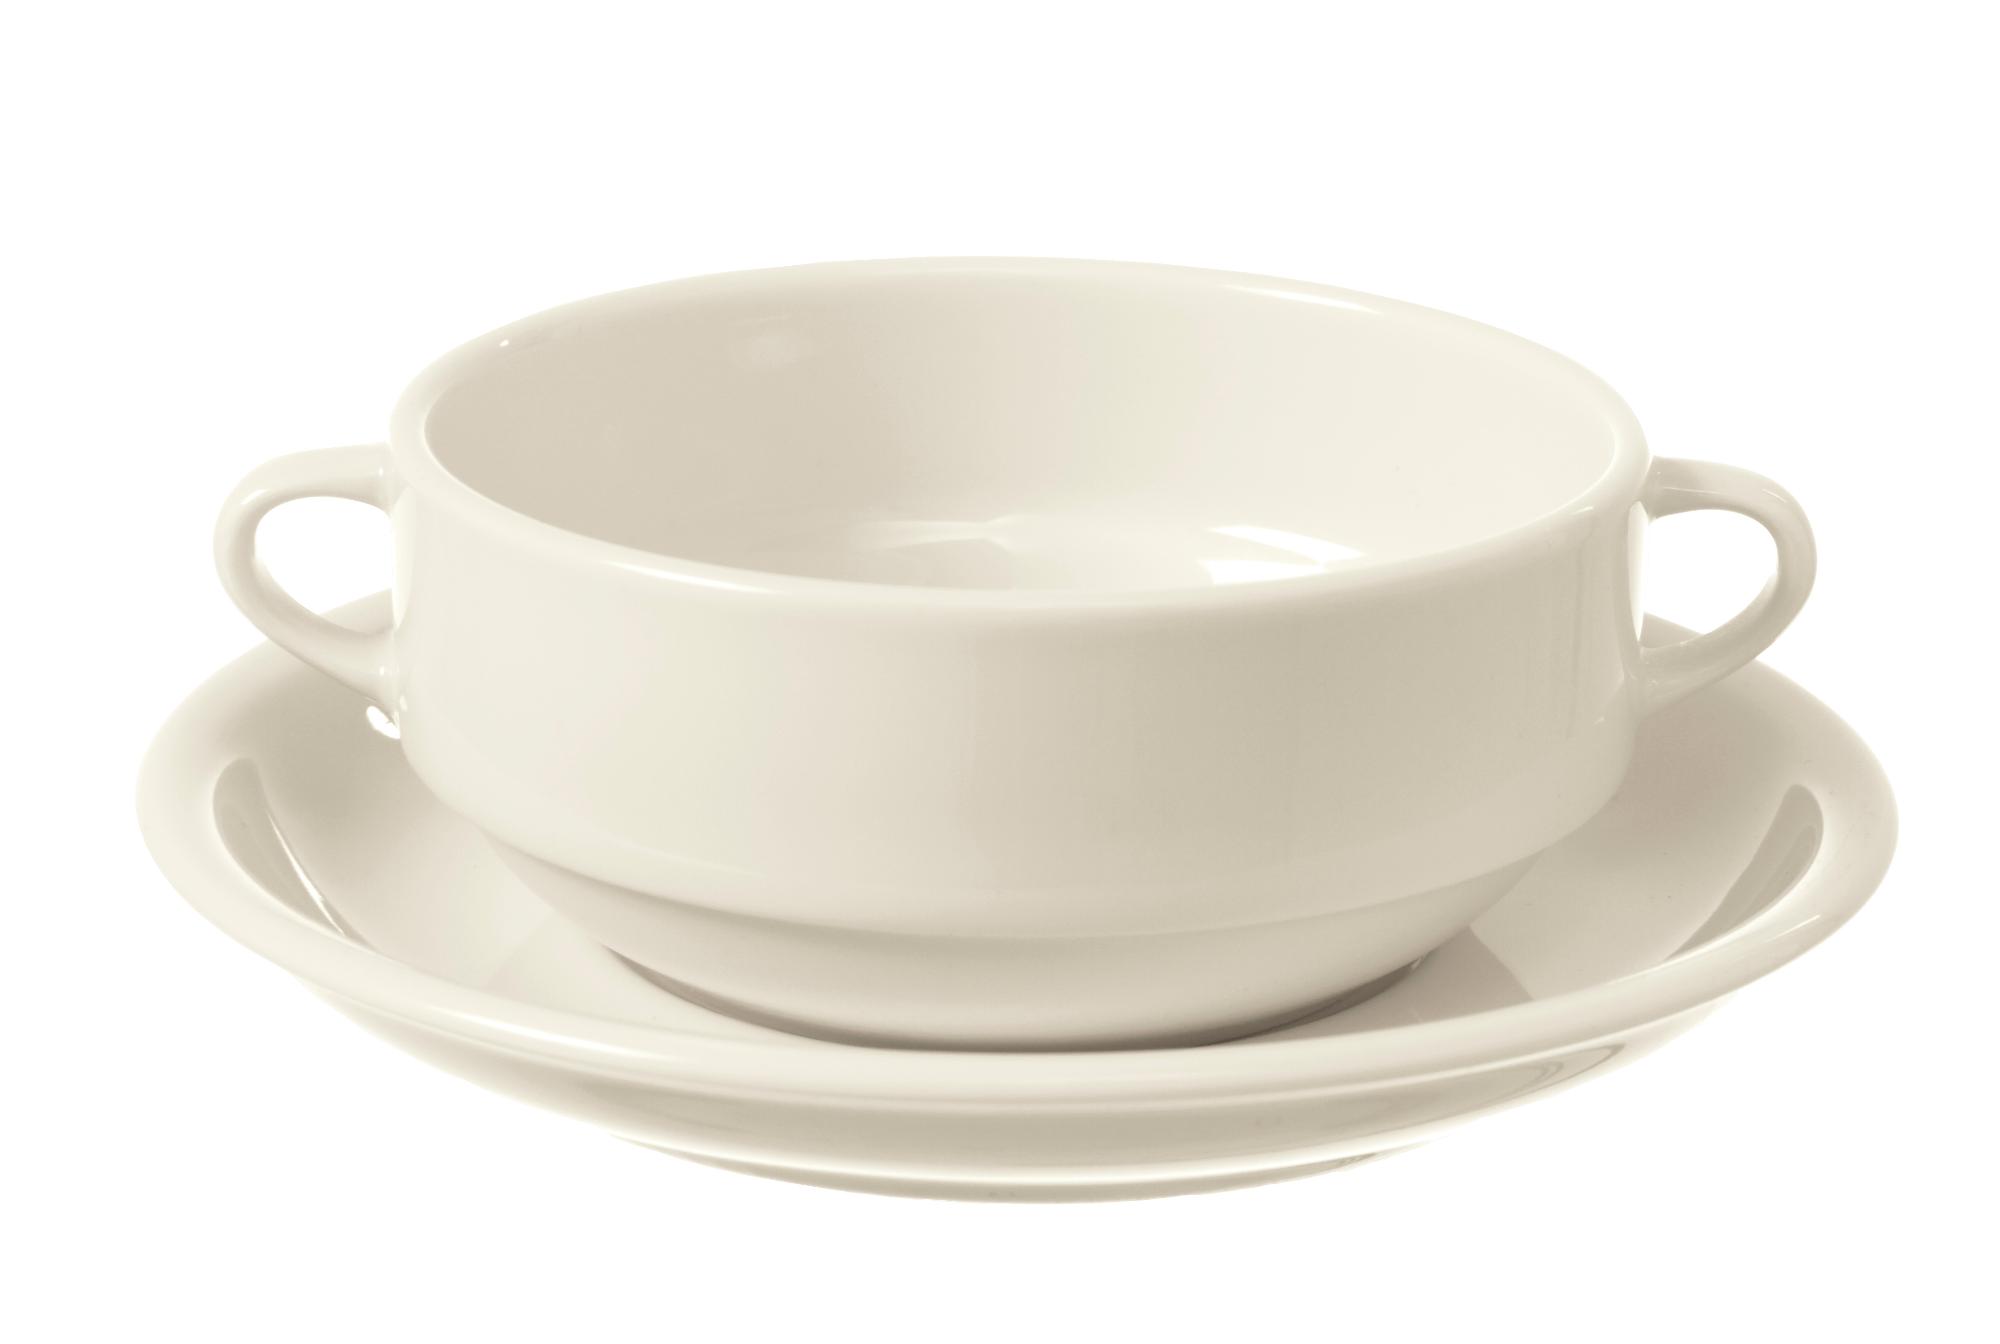 Crema soup bowl, 300ml